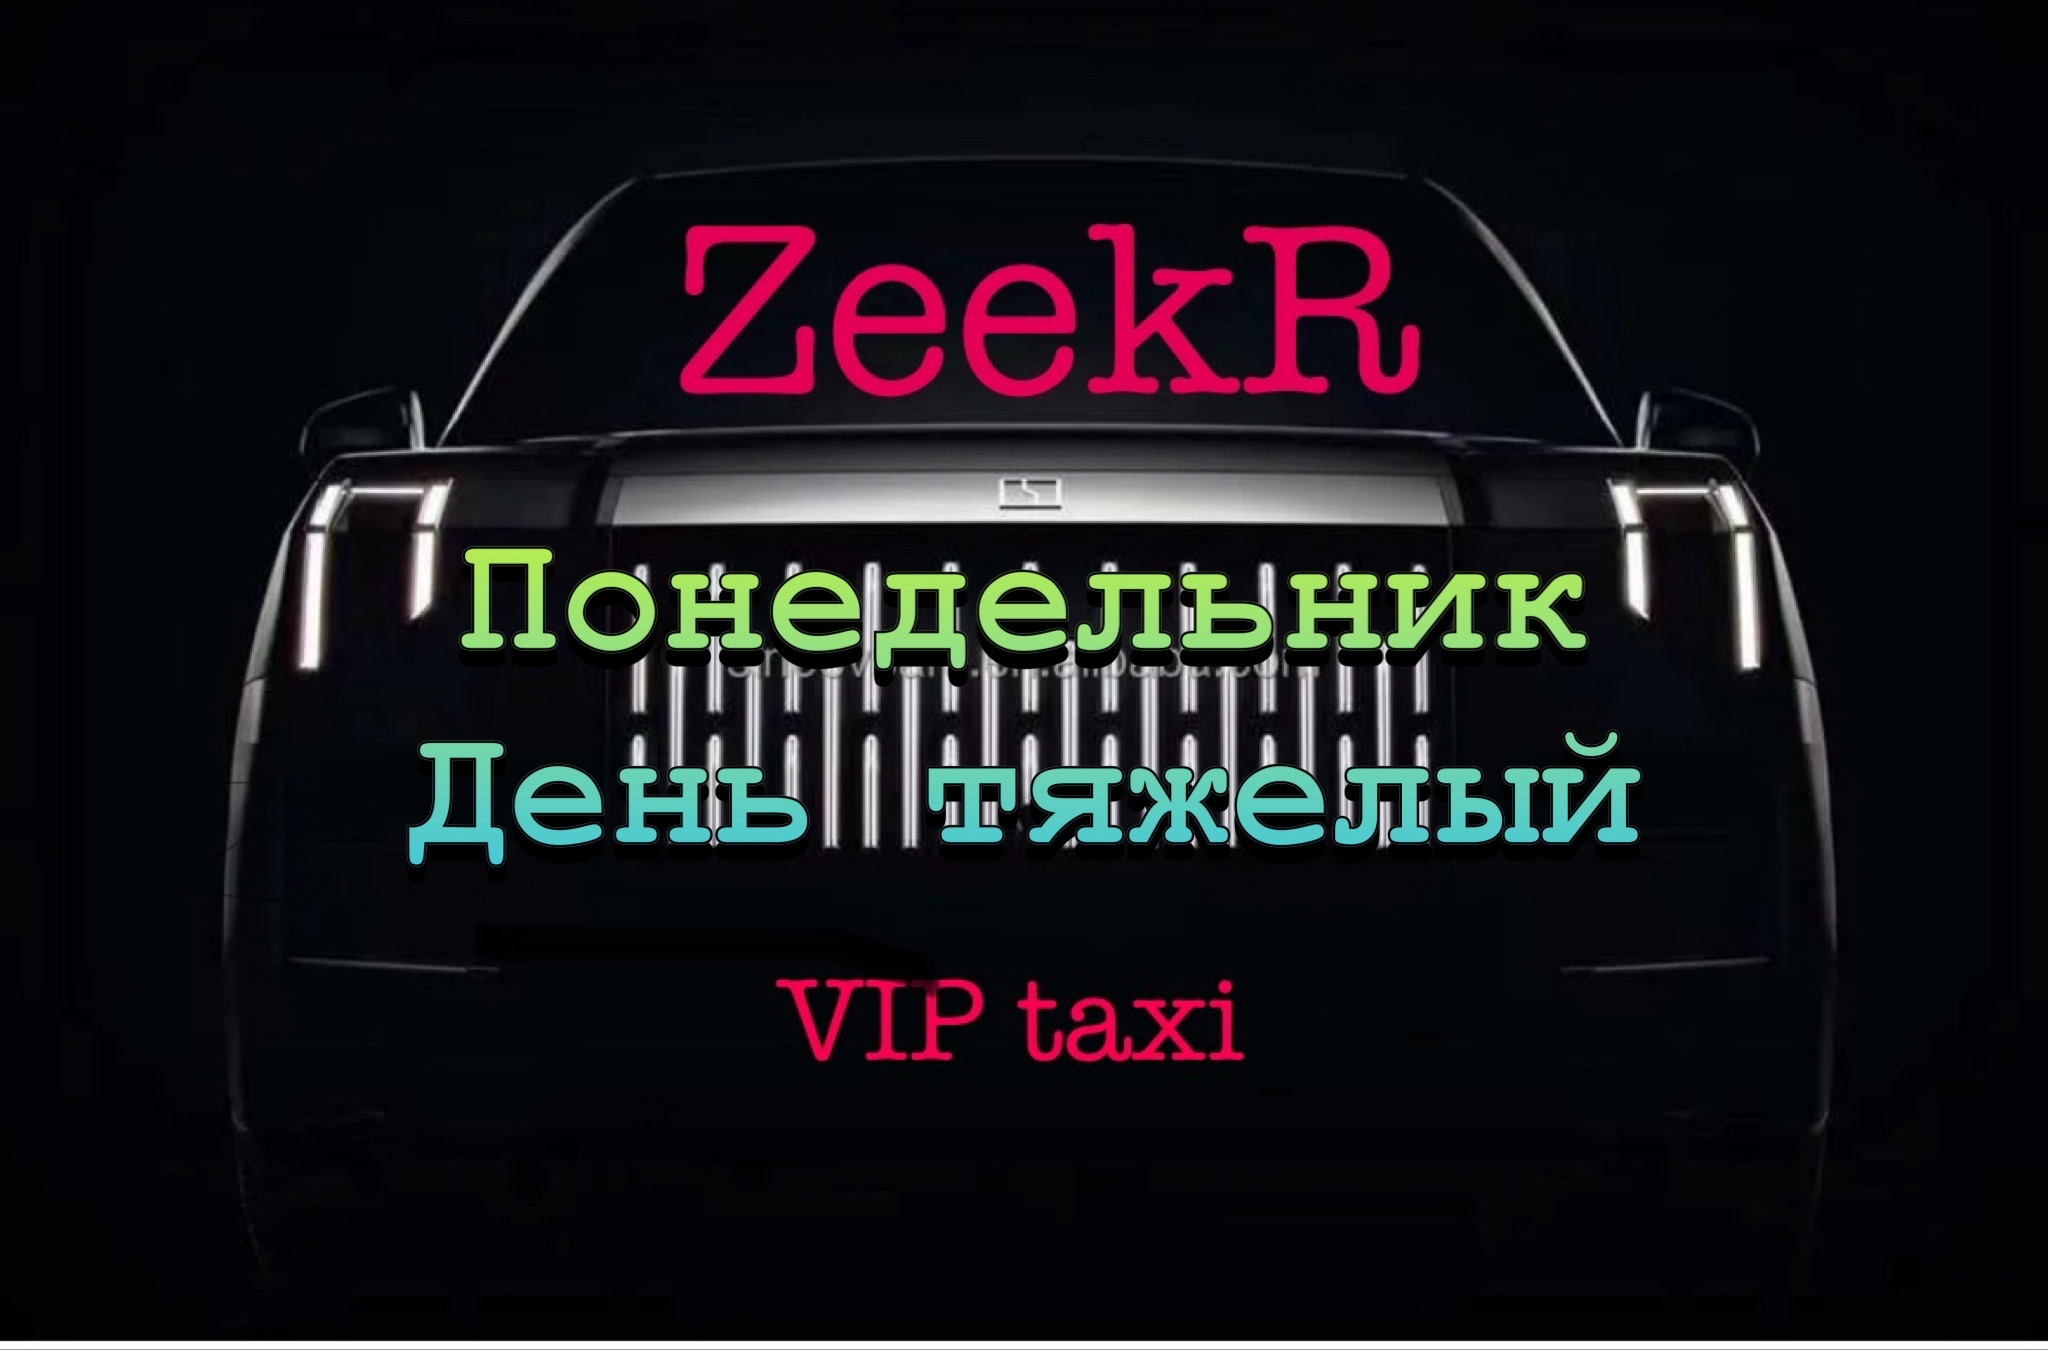 Понедельник в vip taxi /таксую на zeekr009/elite taxi/тариф элит/рабочая смена